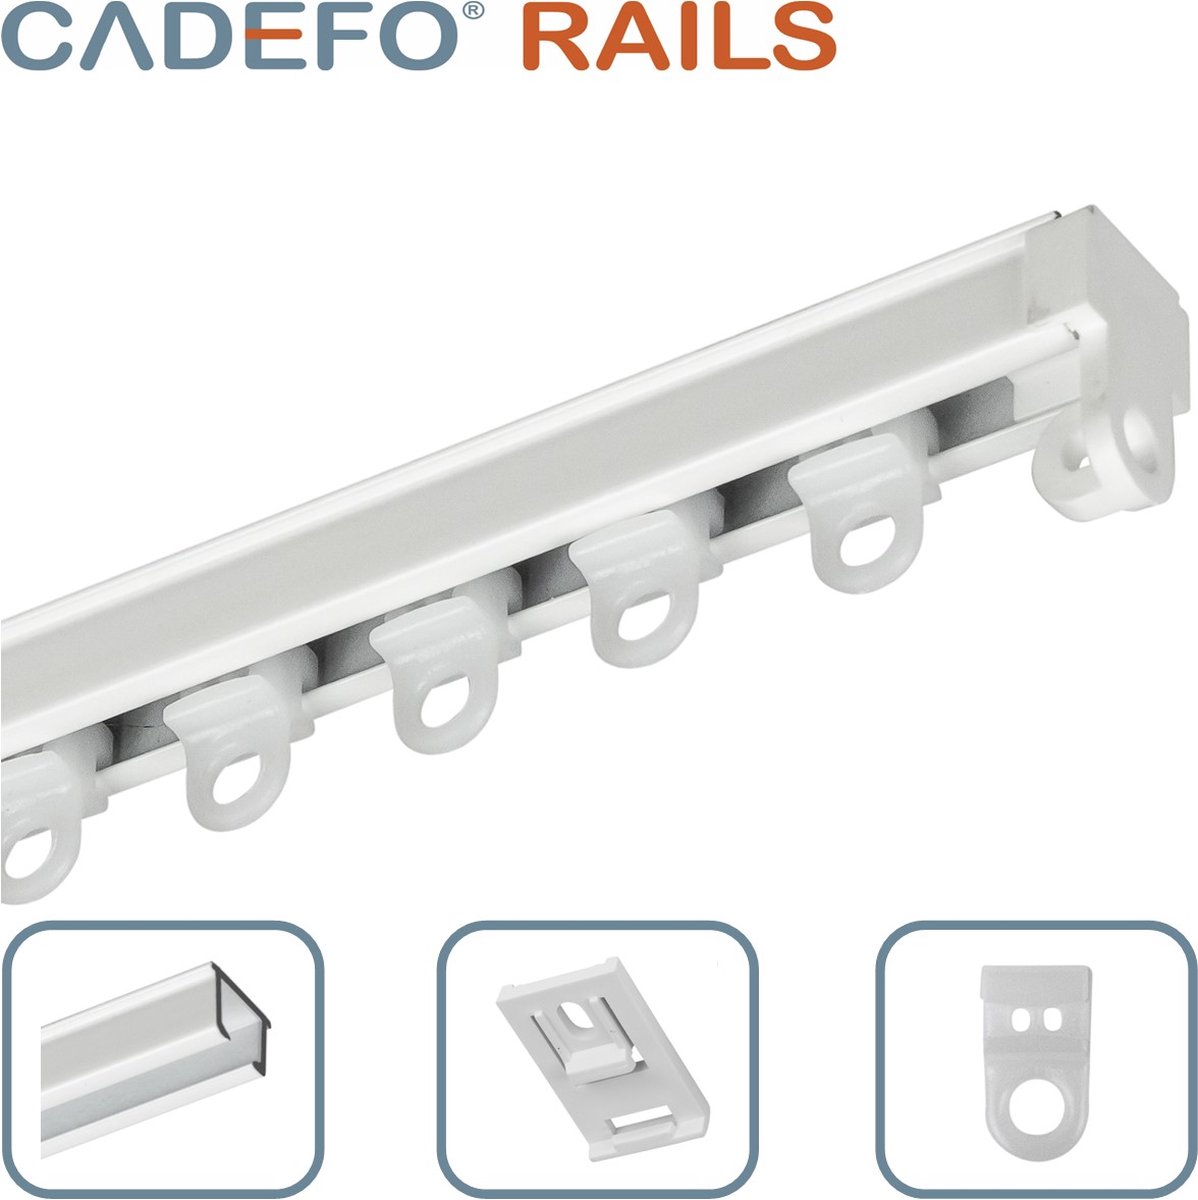 CADEFO RAILS (101 - 150 cm) Gordijnrails - Compleet op maat! - UIT 1 STUK - Leverbaar tot 6 meter - Plafondbevestiging - Lengte 119 cm